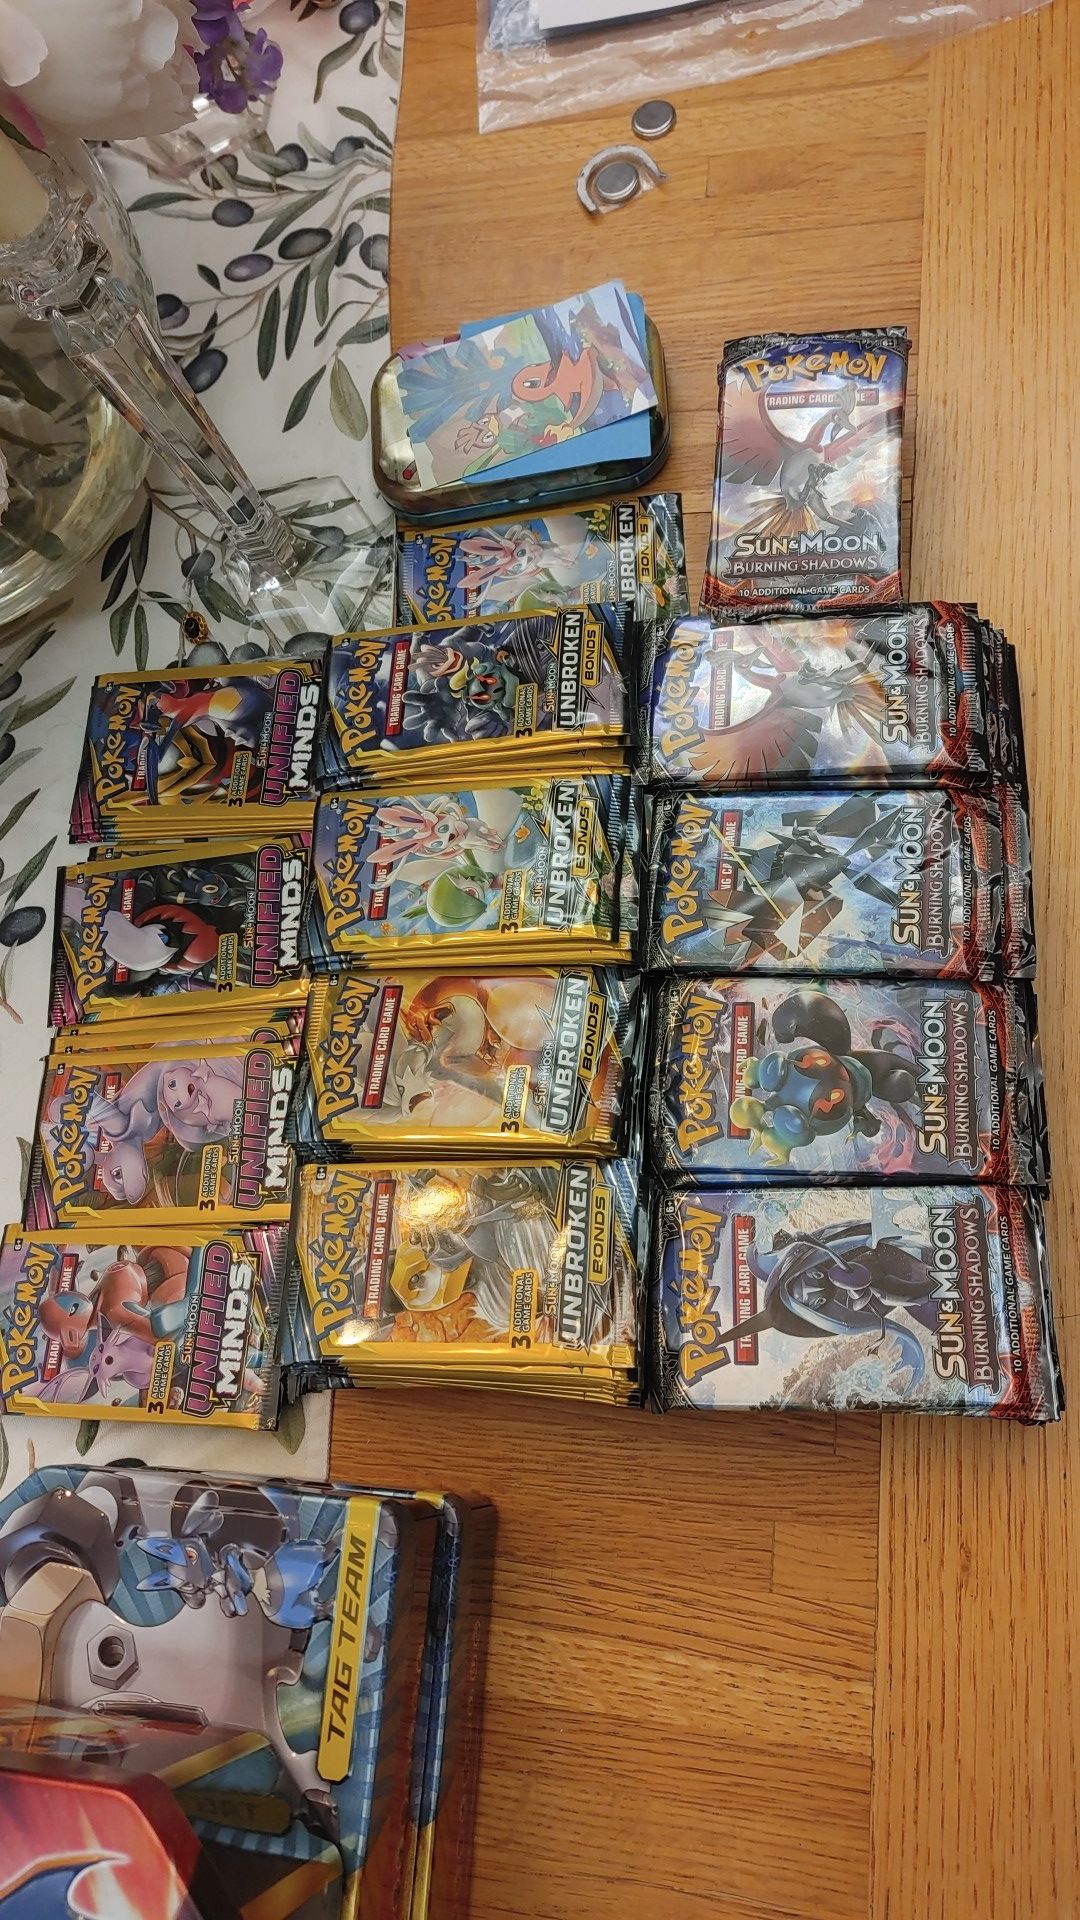 More pokemon packs